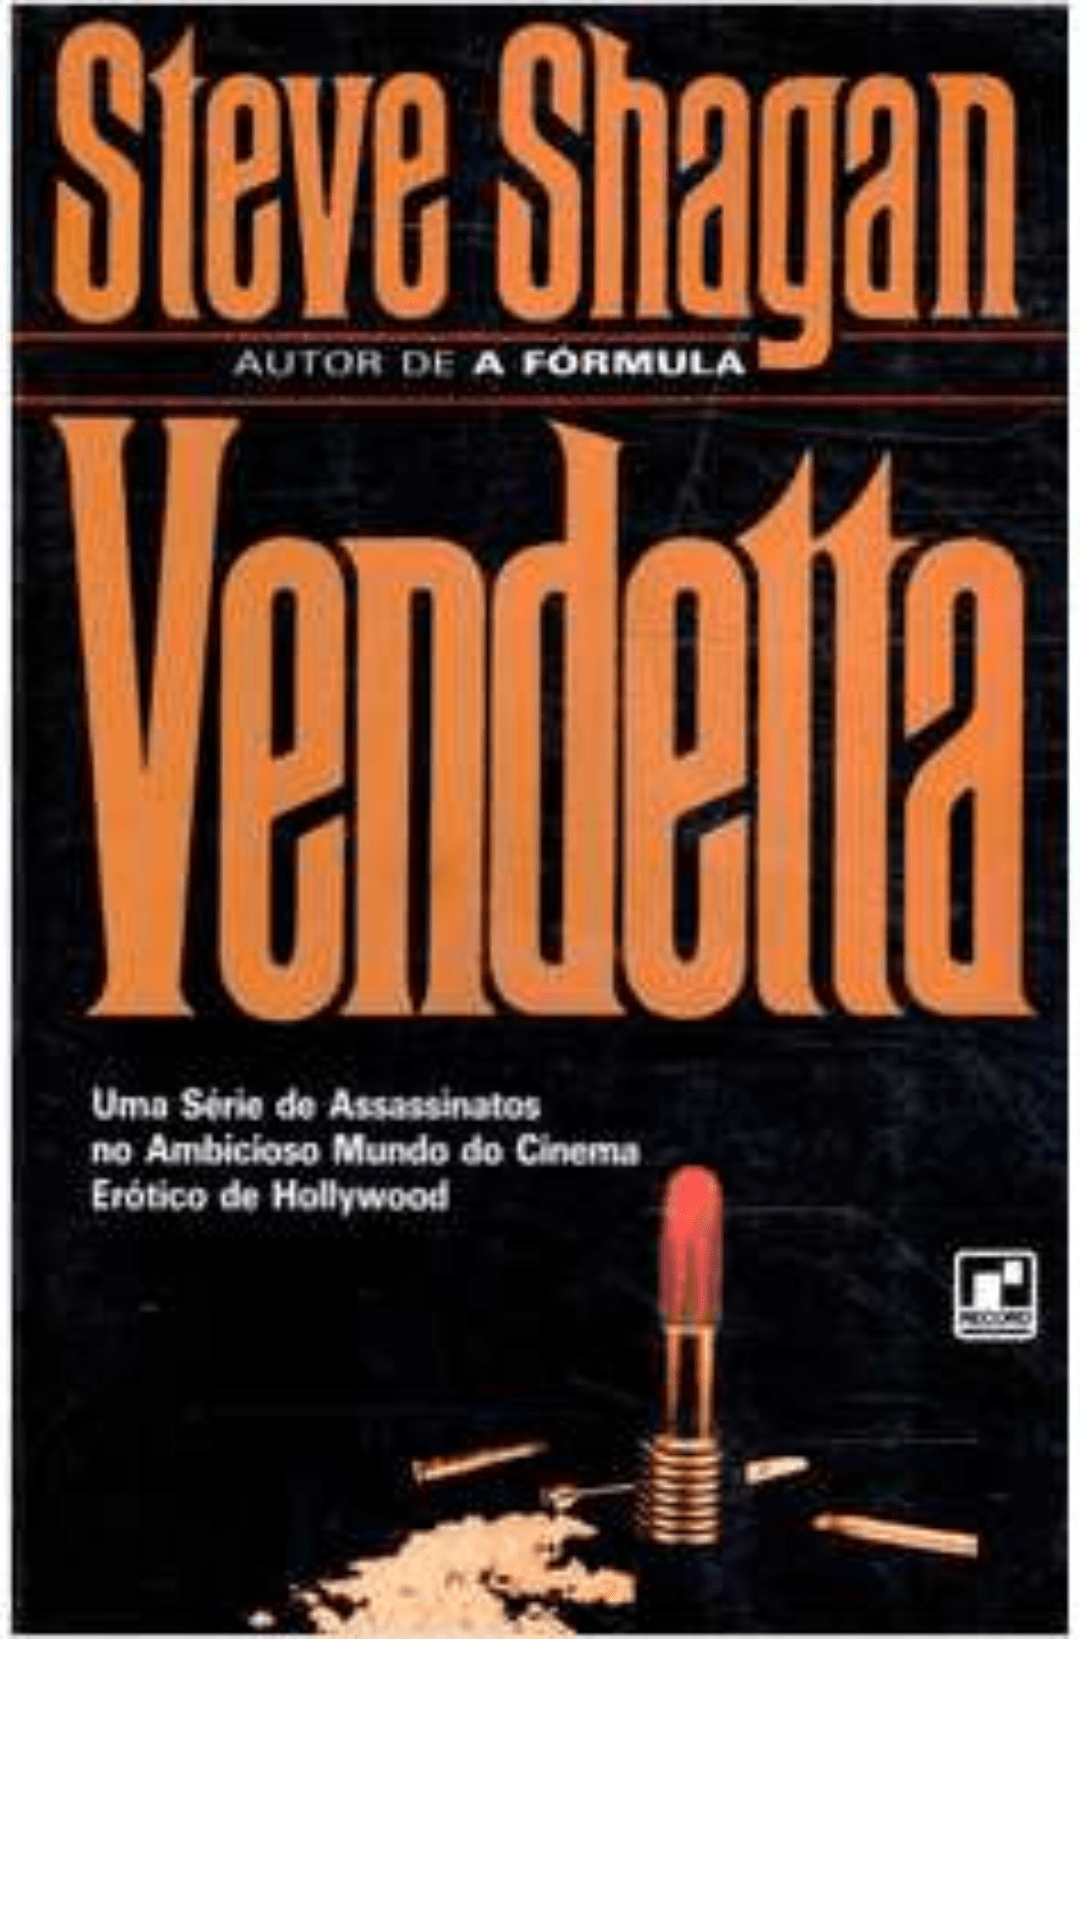 Vendetta by Steve Shagan